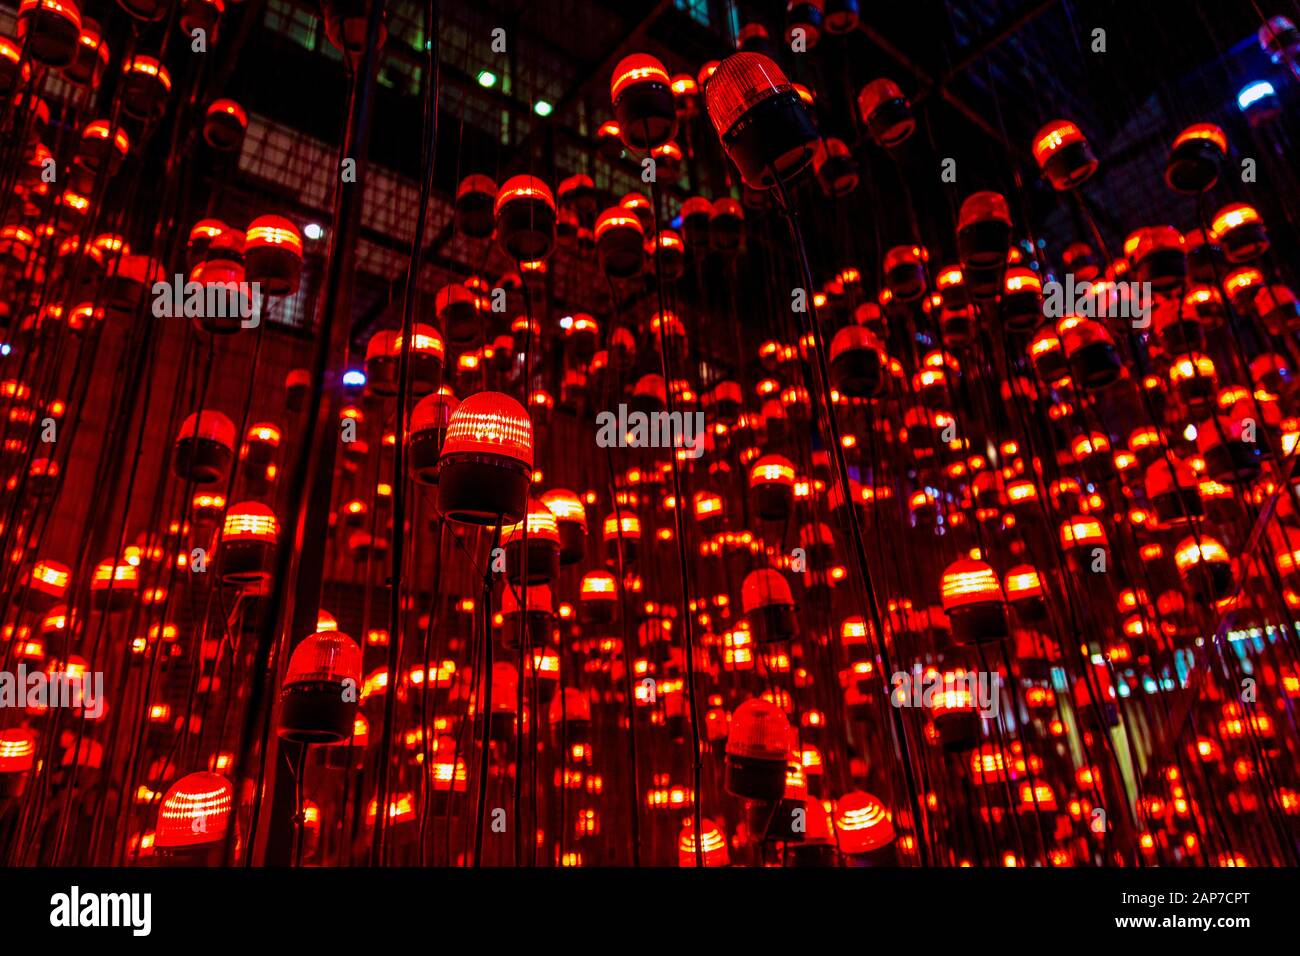 Gros plan de la sculpture lumineuse « Desire » réalisée par Uxu Studio, Canary Wharf Winter Lights Festival 2020, Londres, Royaume-Uni Banque D'Images